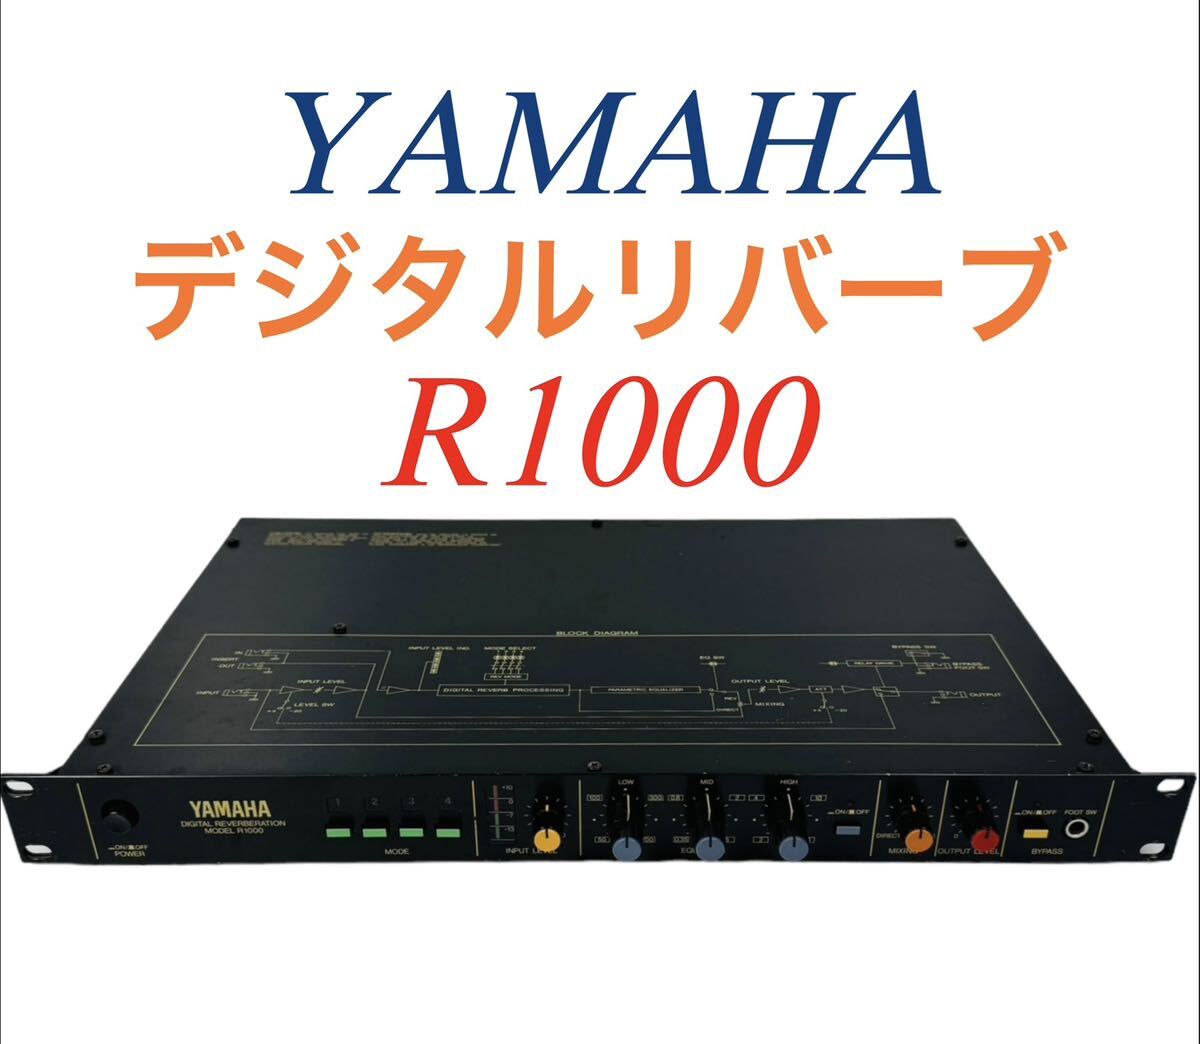 YAMAHA ヤマハ Digital Reverberation デジタルリバーブ エフェクター R1000_画像1